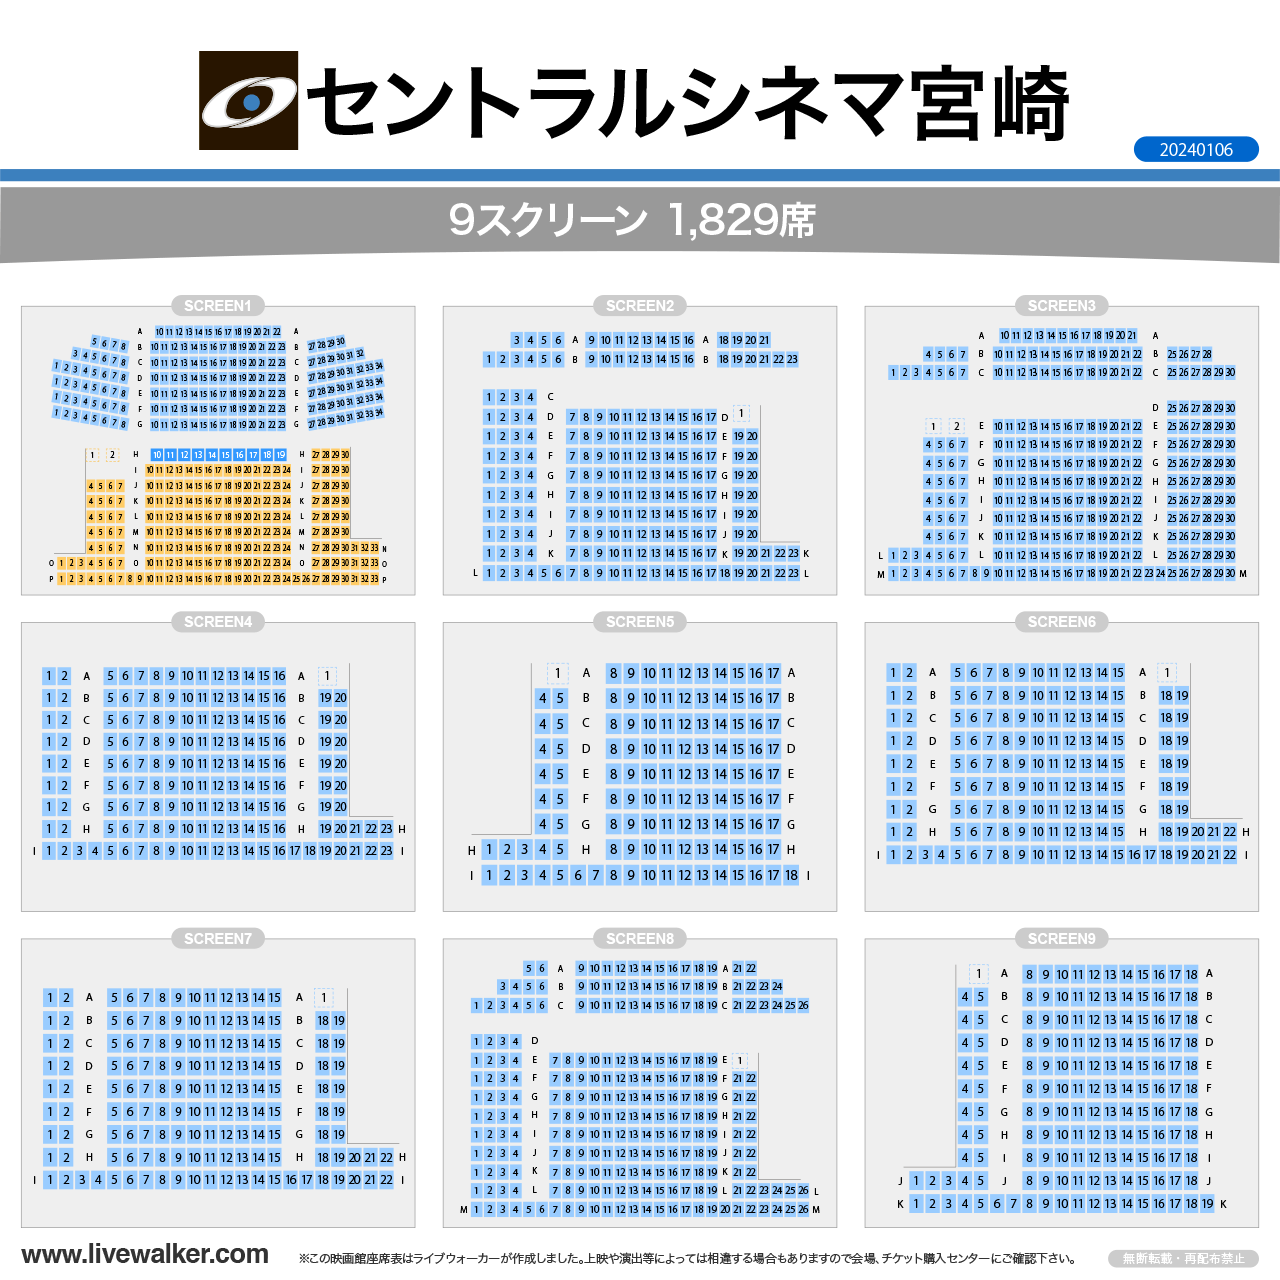 セントラルシネマ宮崎シネマの座席表